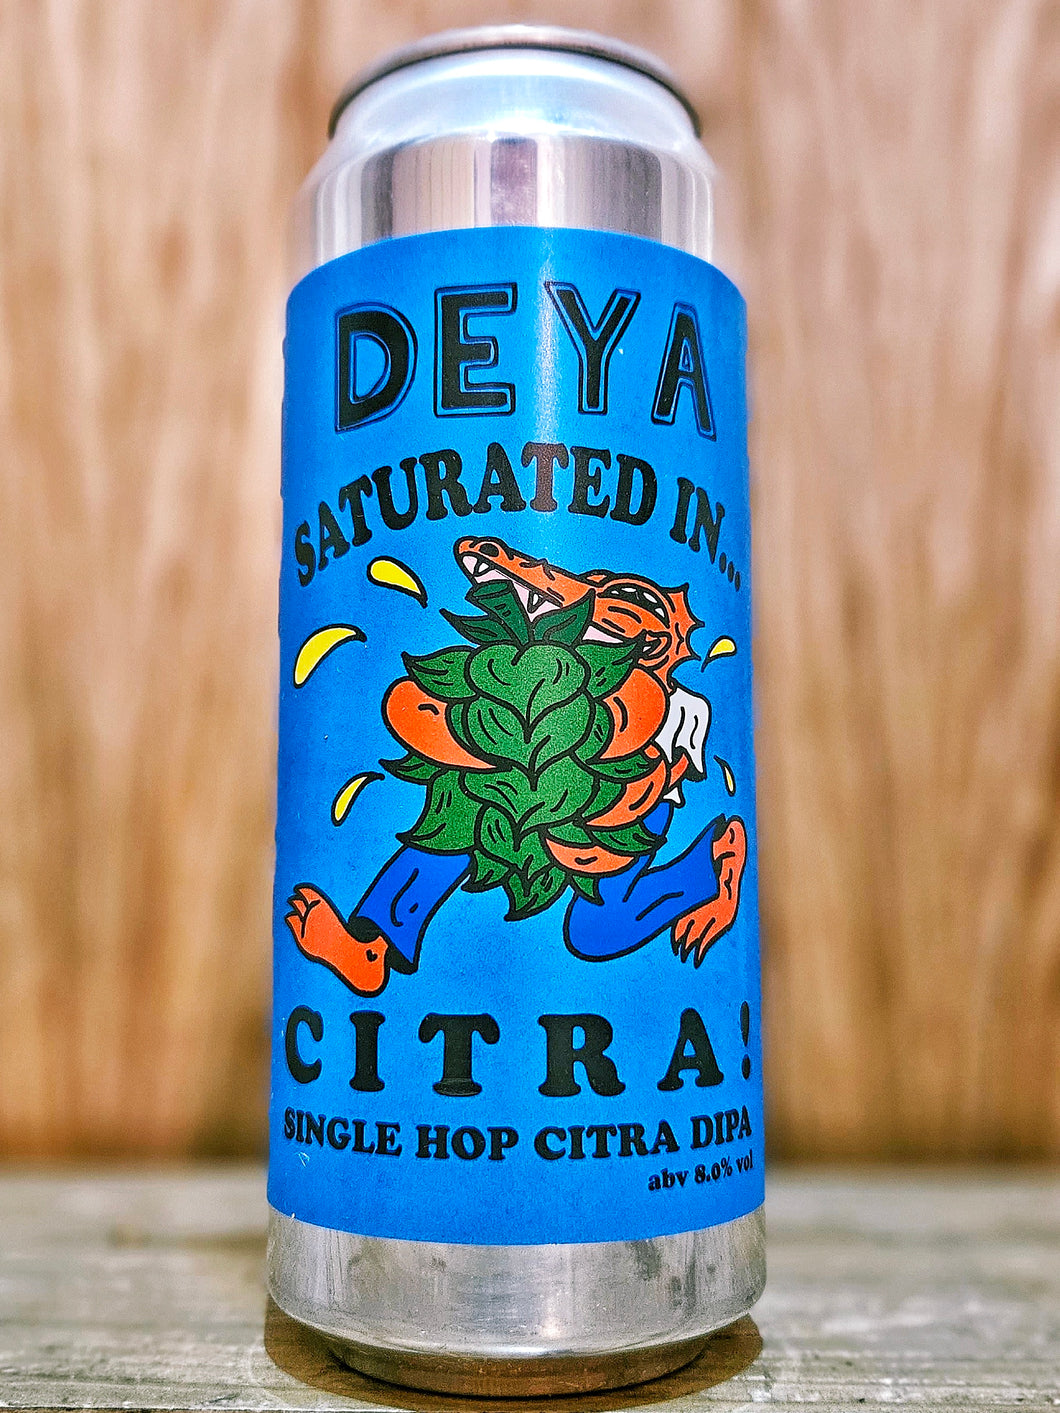 DEYA - Saturated In Citra